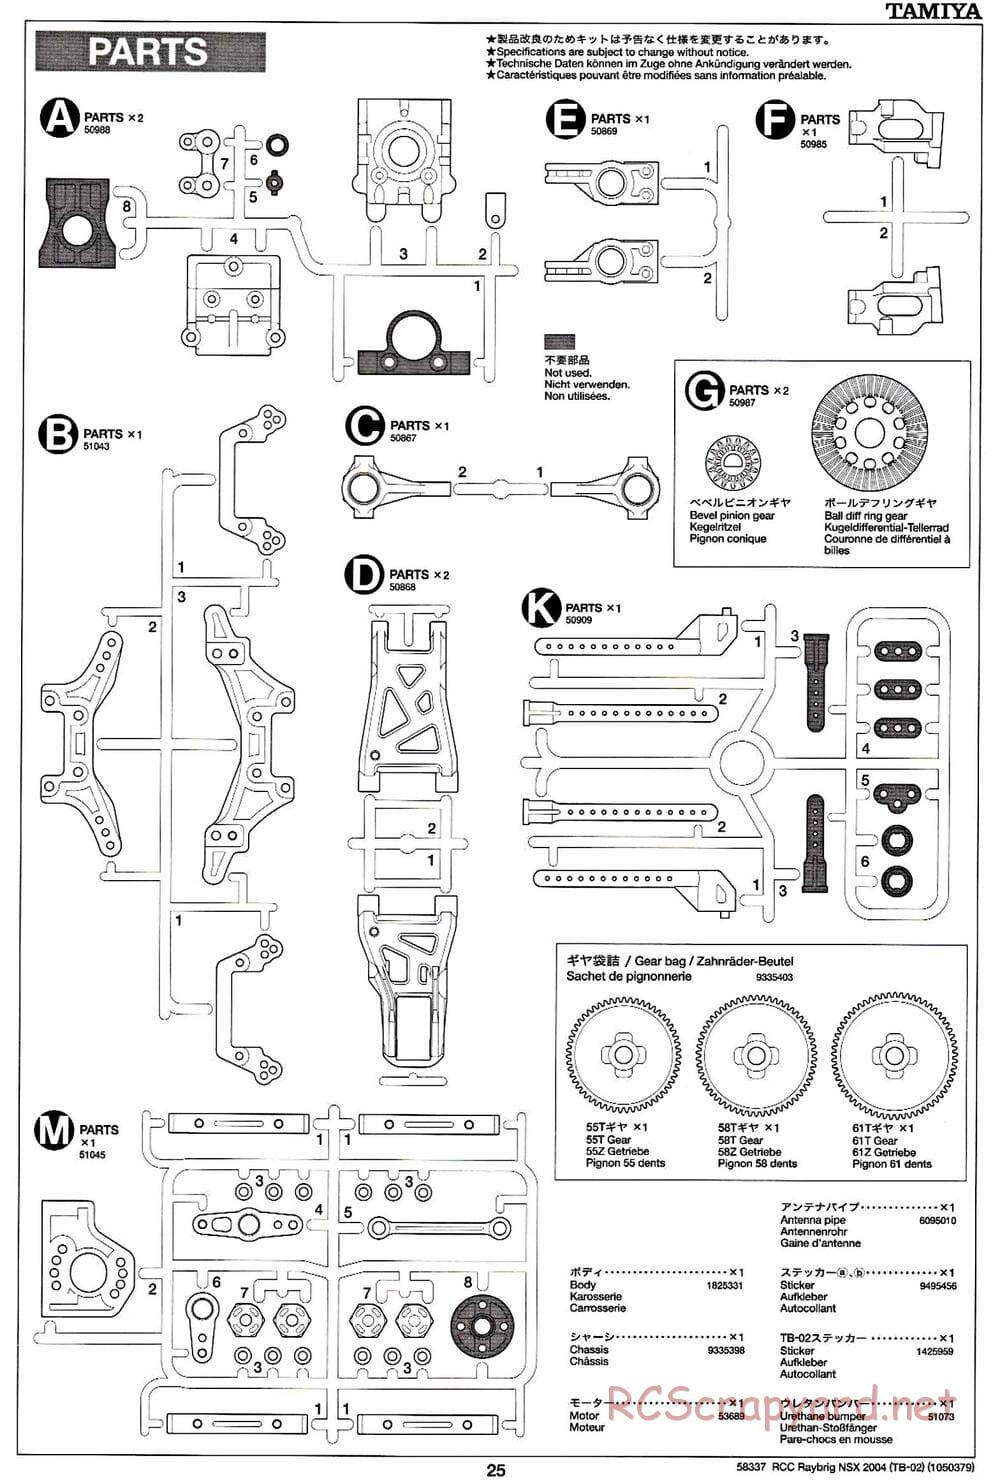 Tamiya - Raybrig NSX 2004 - TB-02 Chassis - Manual - Page 25